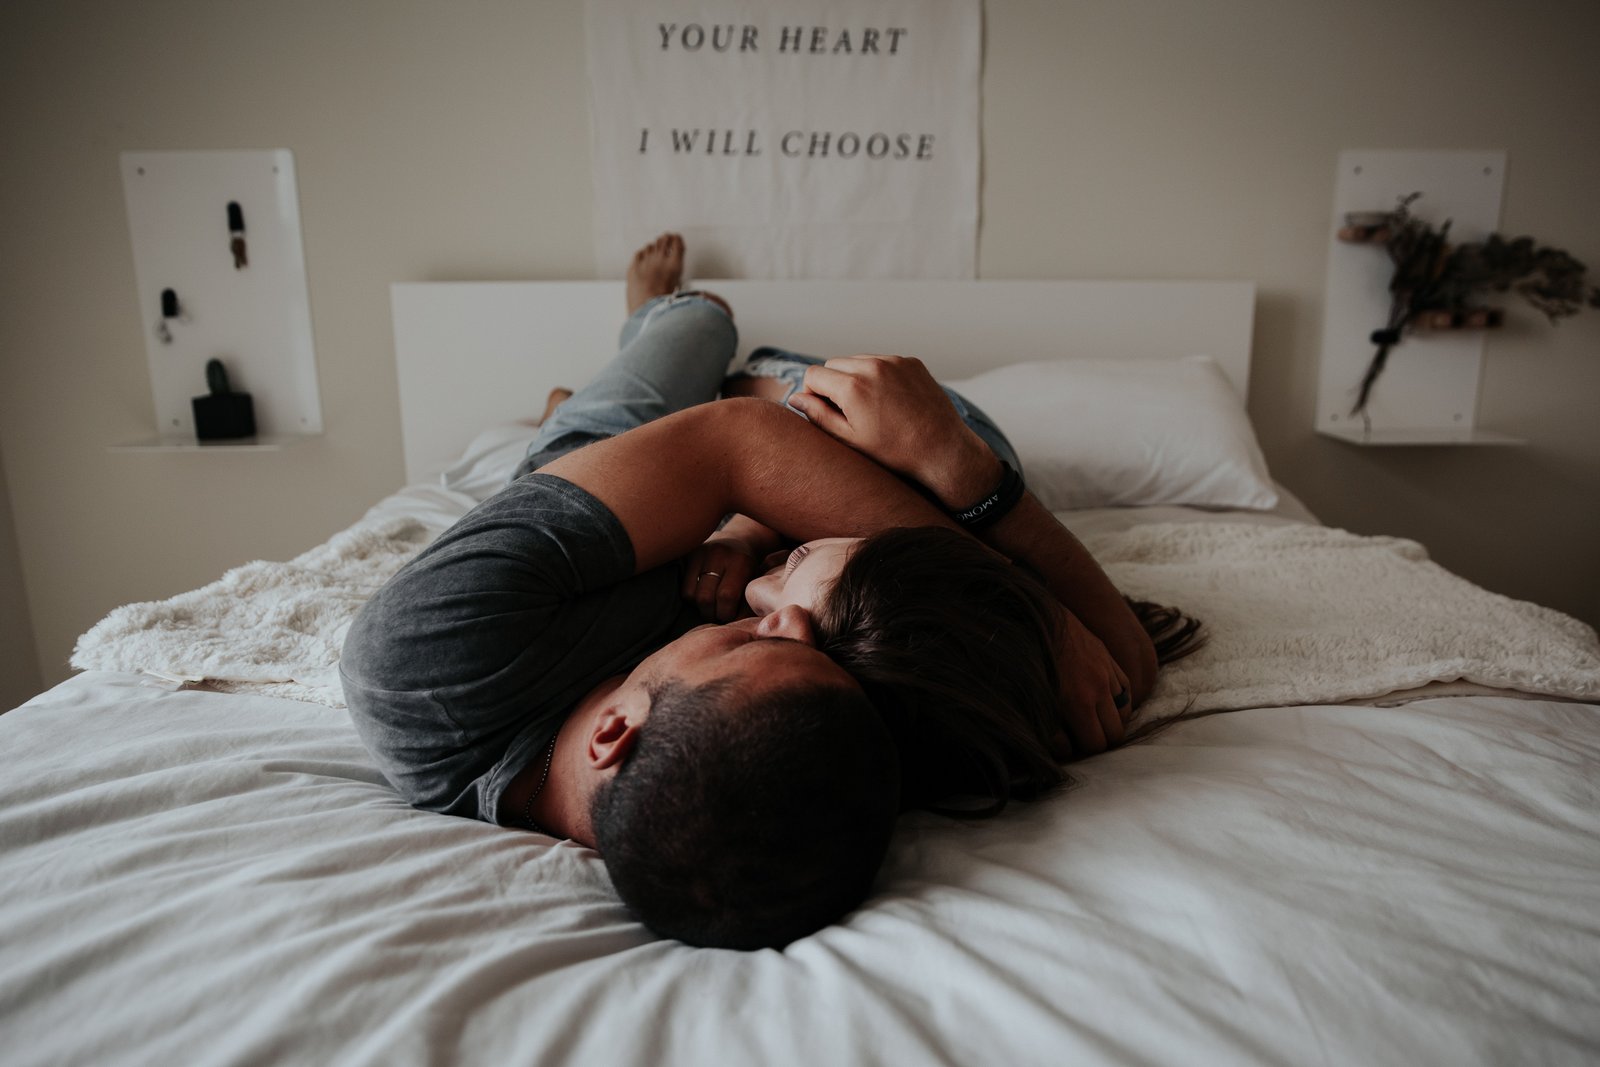 Un bărbat fără disfuncție erectilă sau probleme de potență se află în pat lângă o femeie, amândoi îmbrățișându-se.